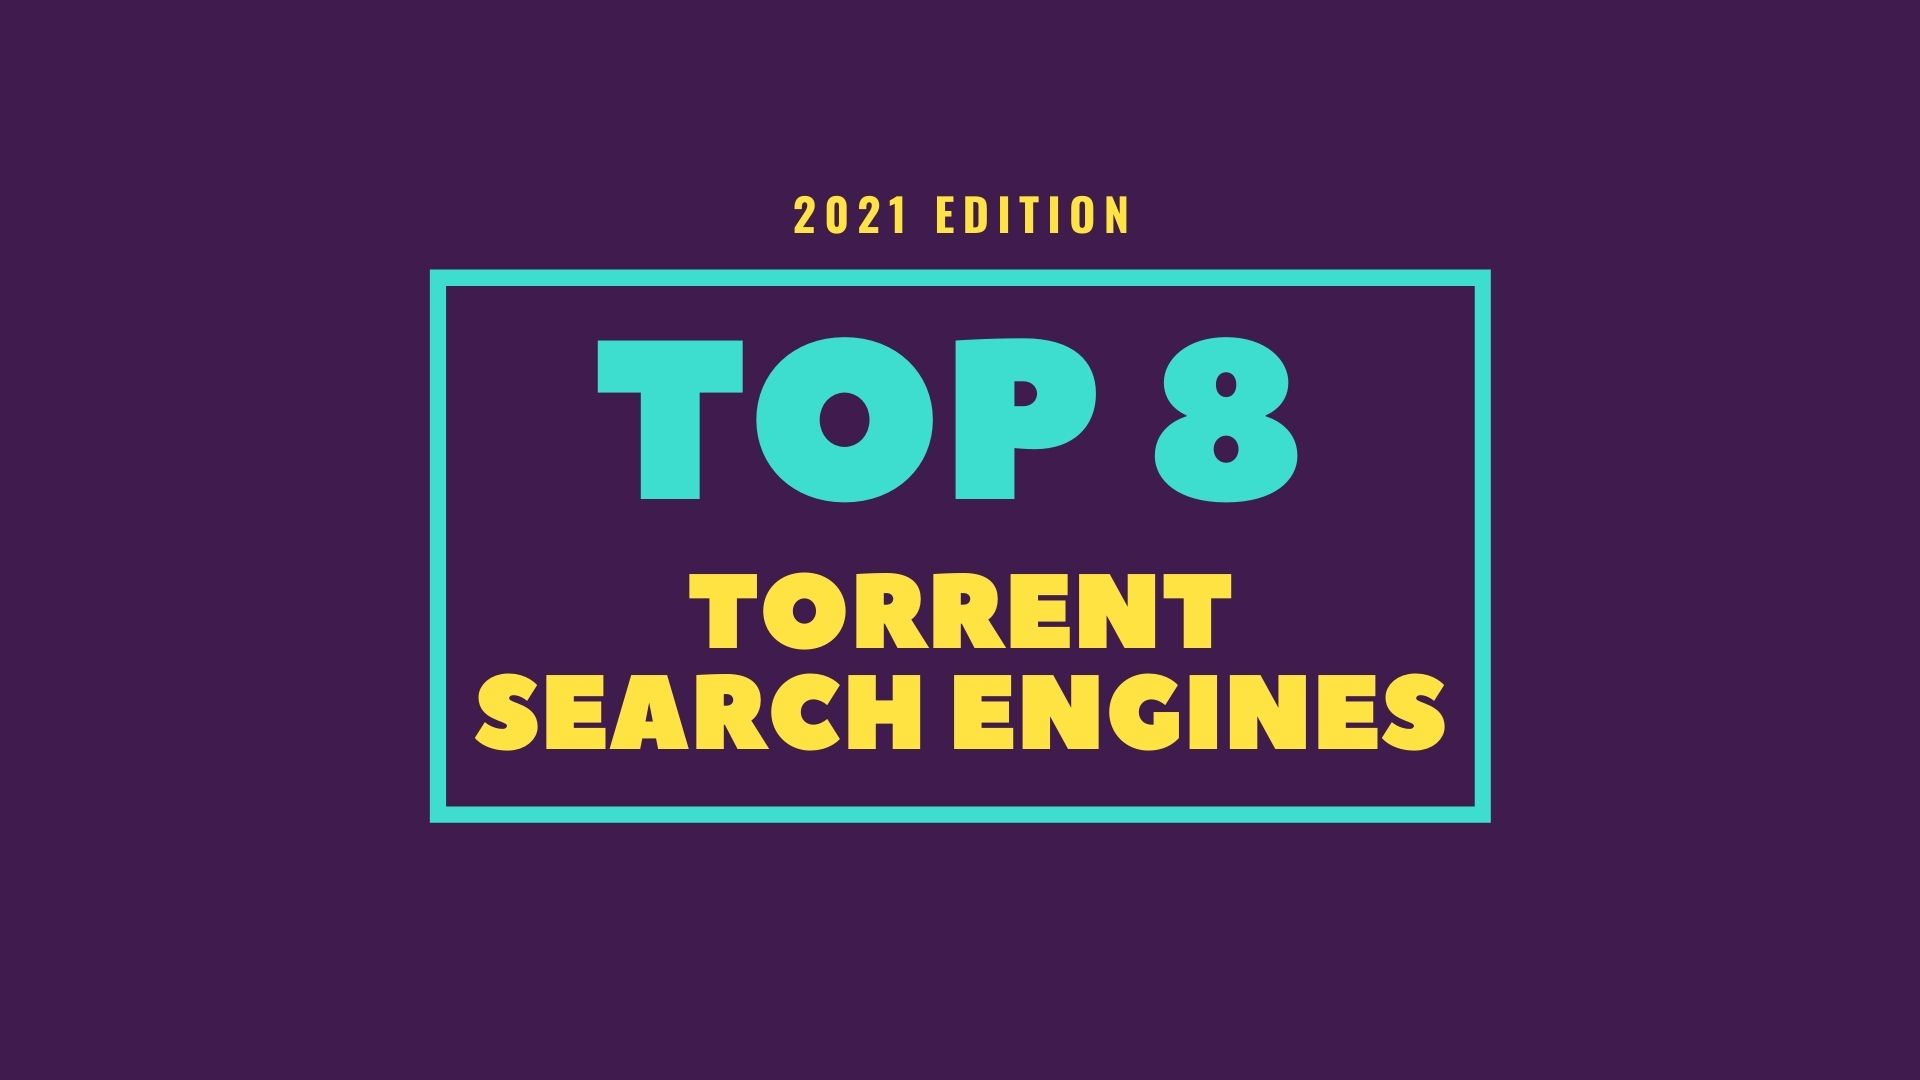 12 Best Torrent Sites in 2023 — Safe & Still Working